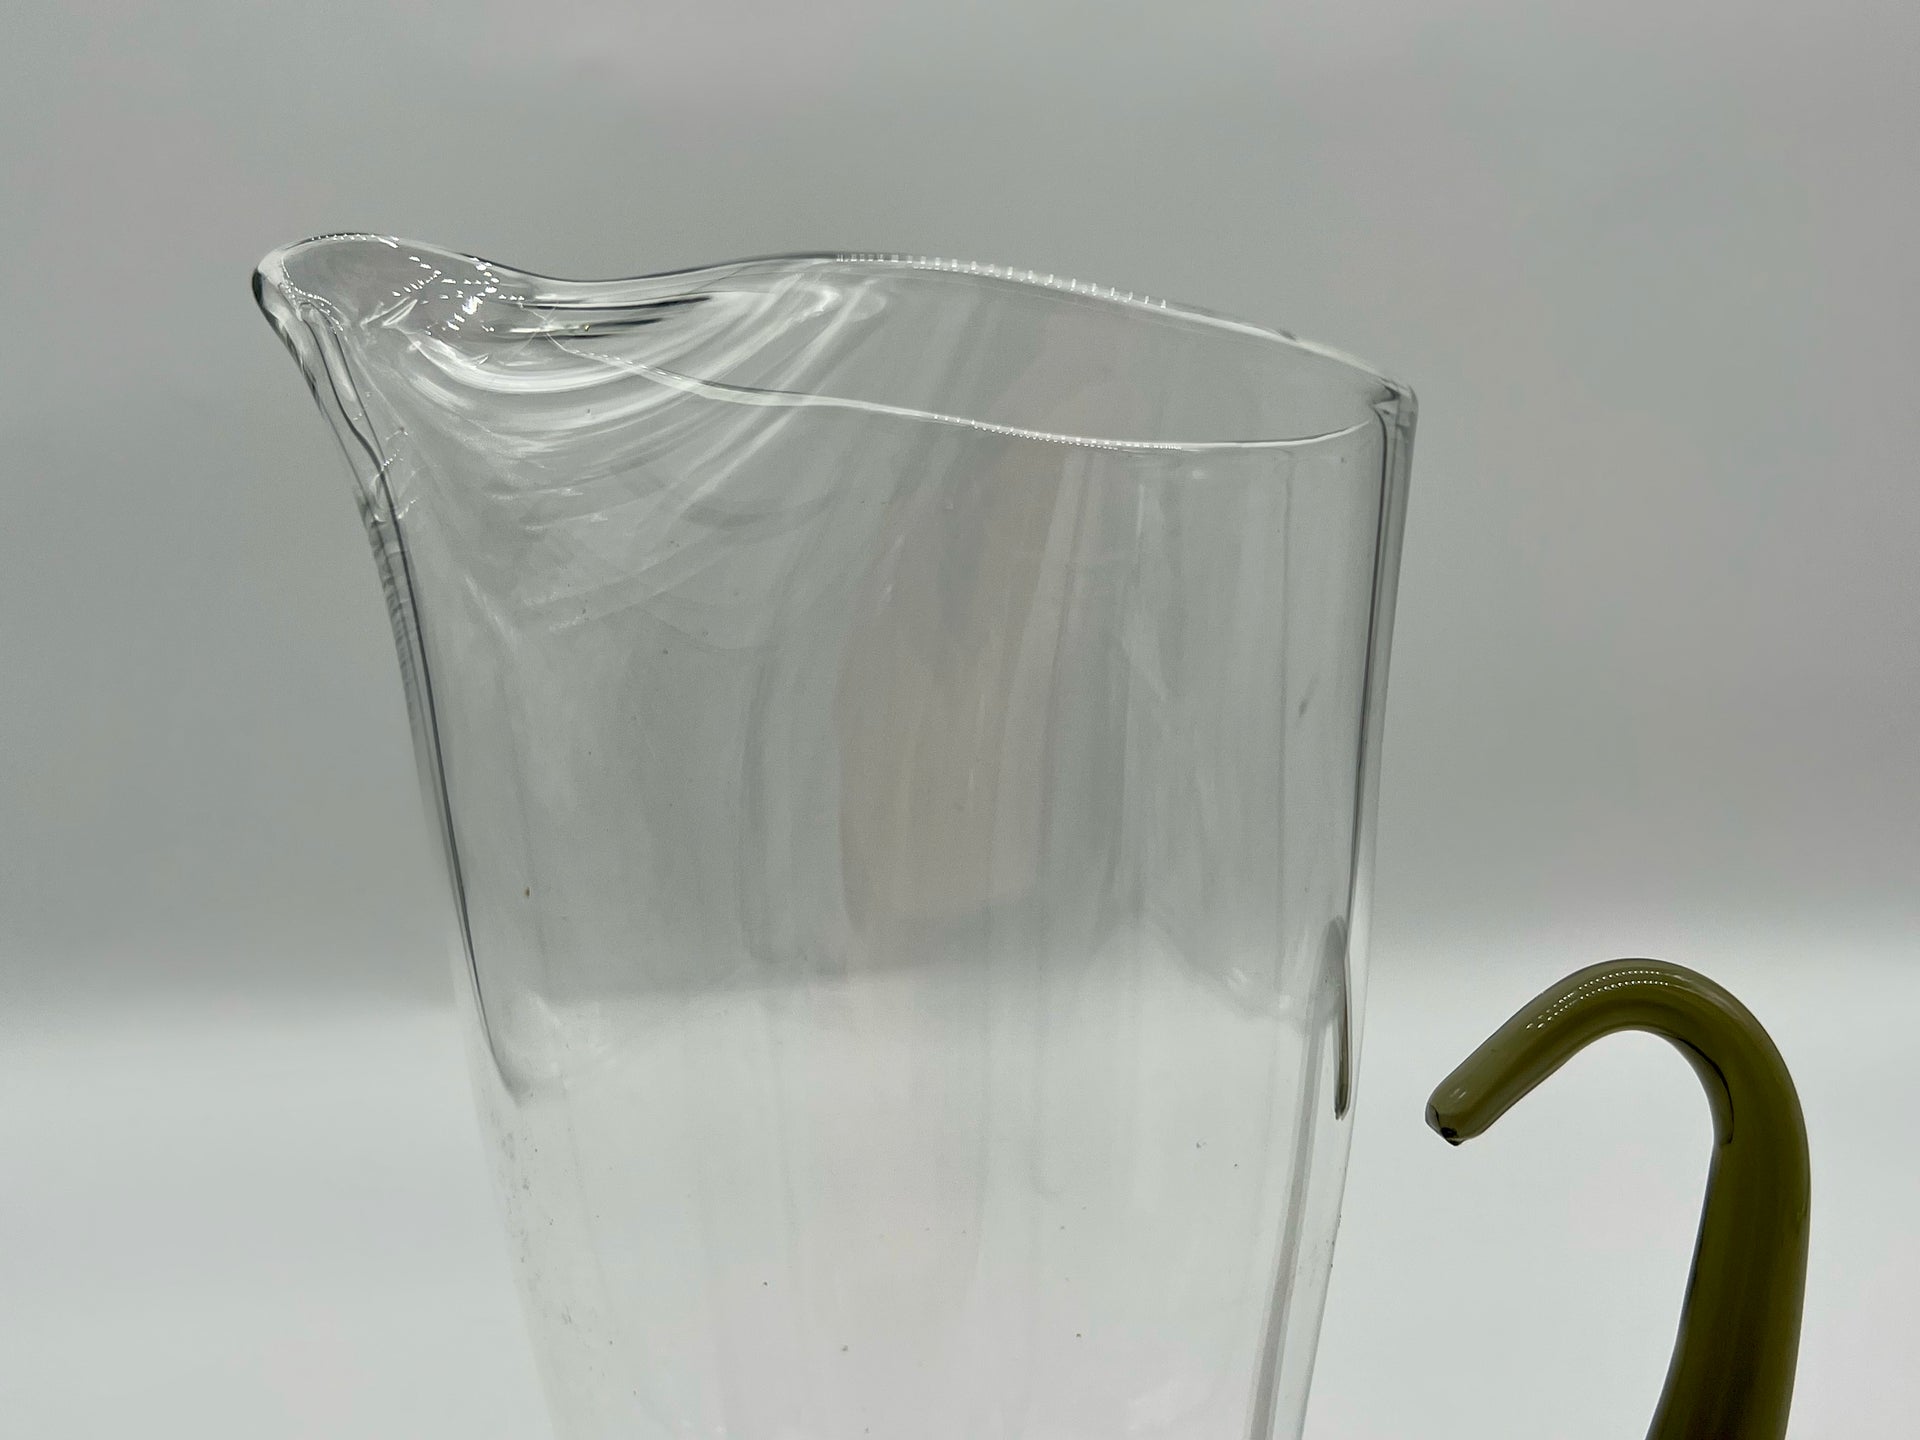 artisanal jug with smoked glass handle